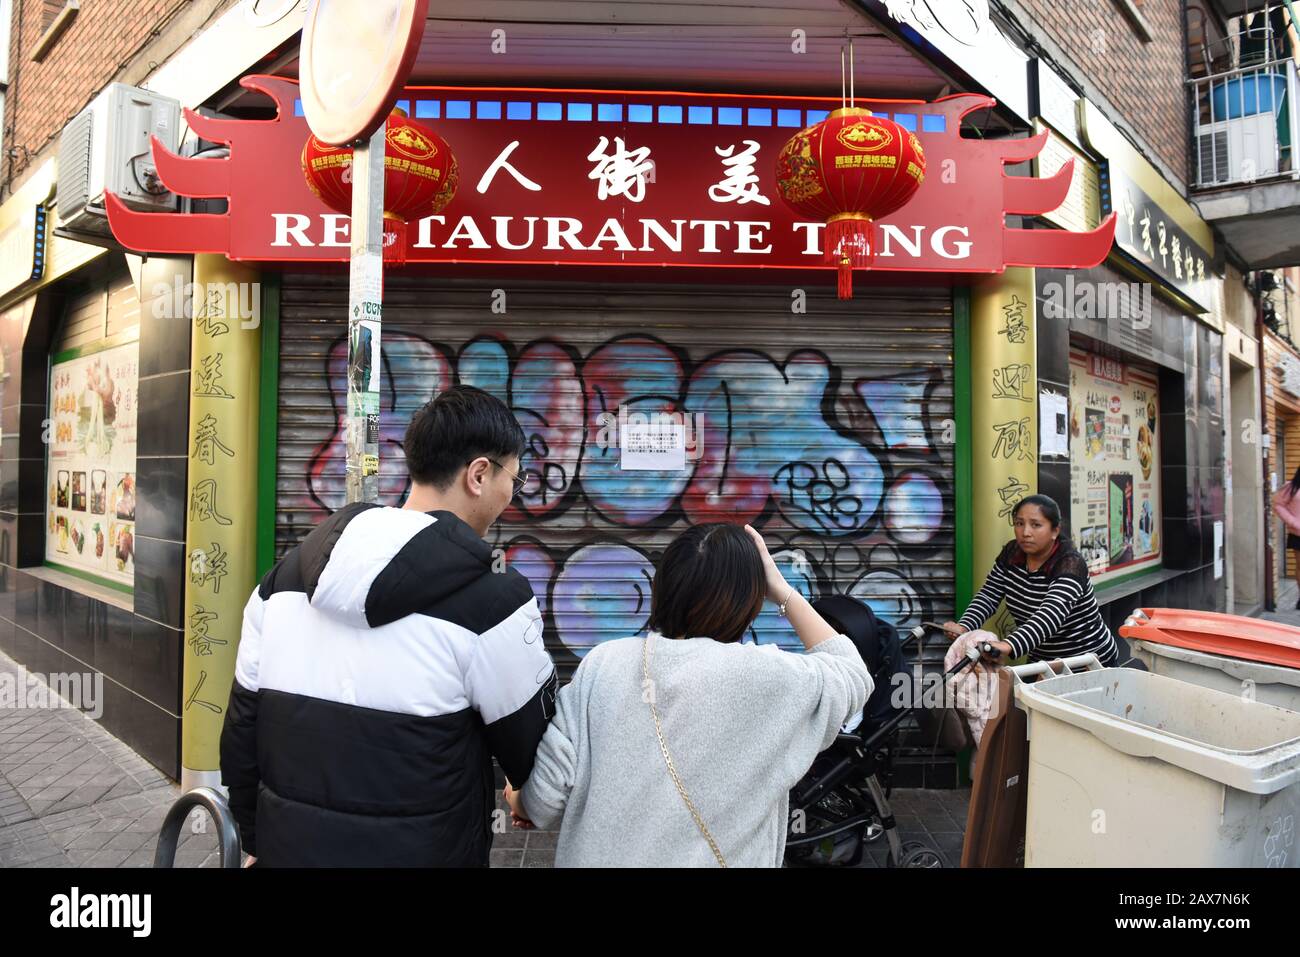 La base de datos Electricista molestarse Un restaurante chino se ve cerrado en el distrito de Usera.Después del  brote de Coronavirus en China, los residentes chinos en el distrito de Usera  en Madrid han cerrado cientos de tiendas,